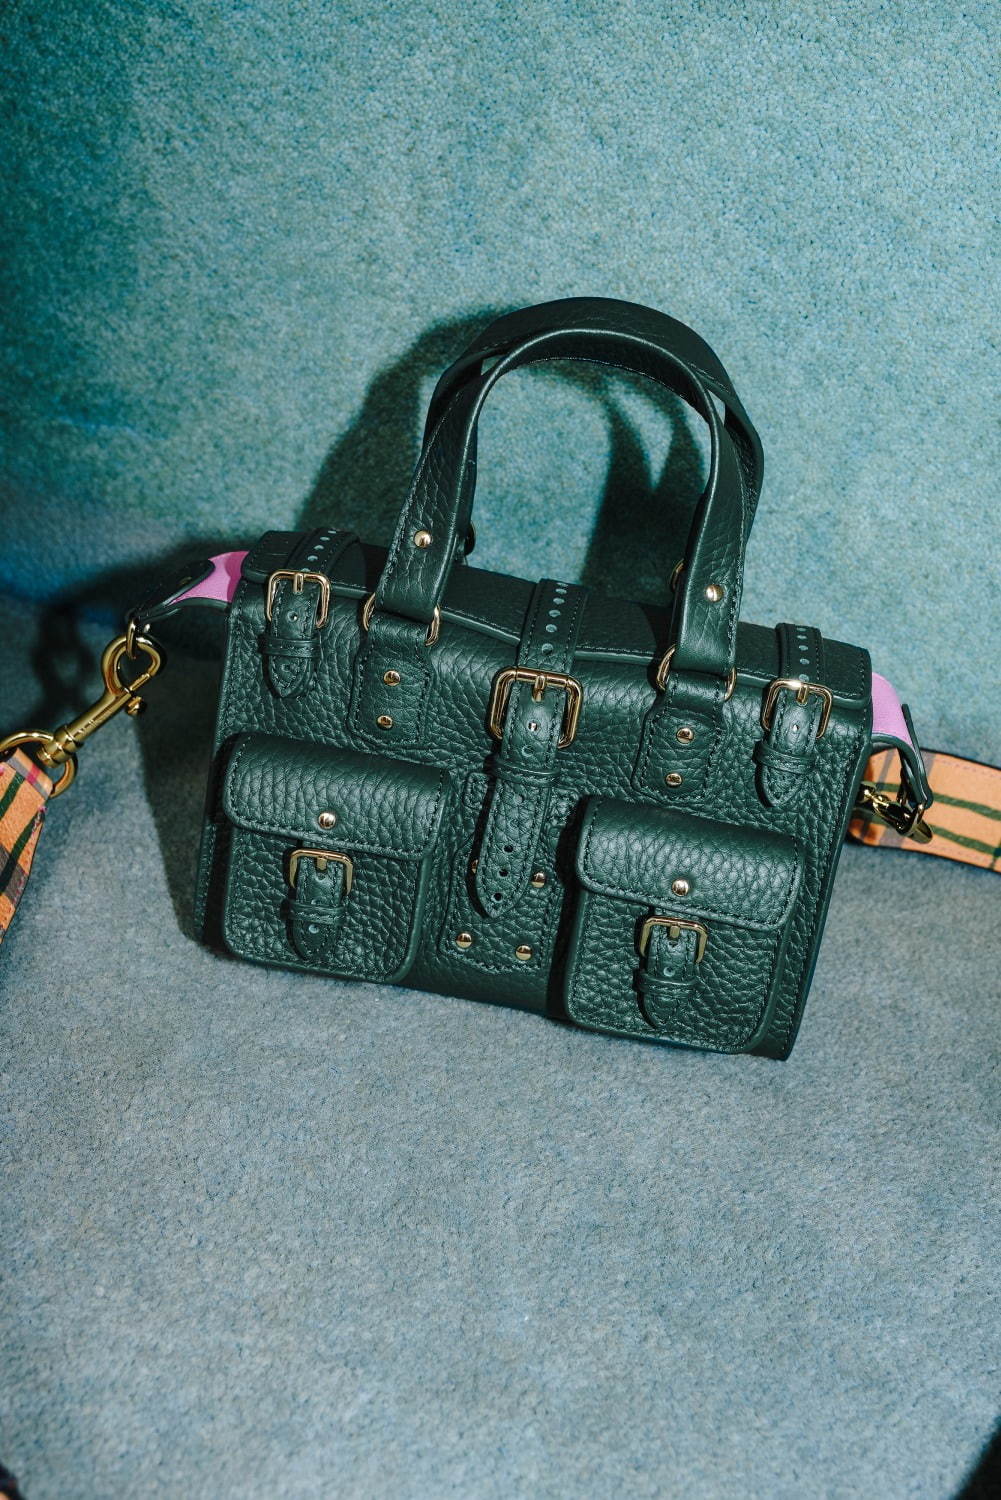 マルベリー名作バッグが“ミニサイズ”で復刻、旅行鞄イメージの